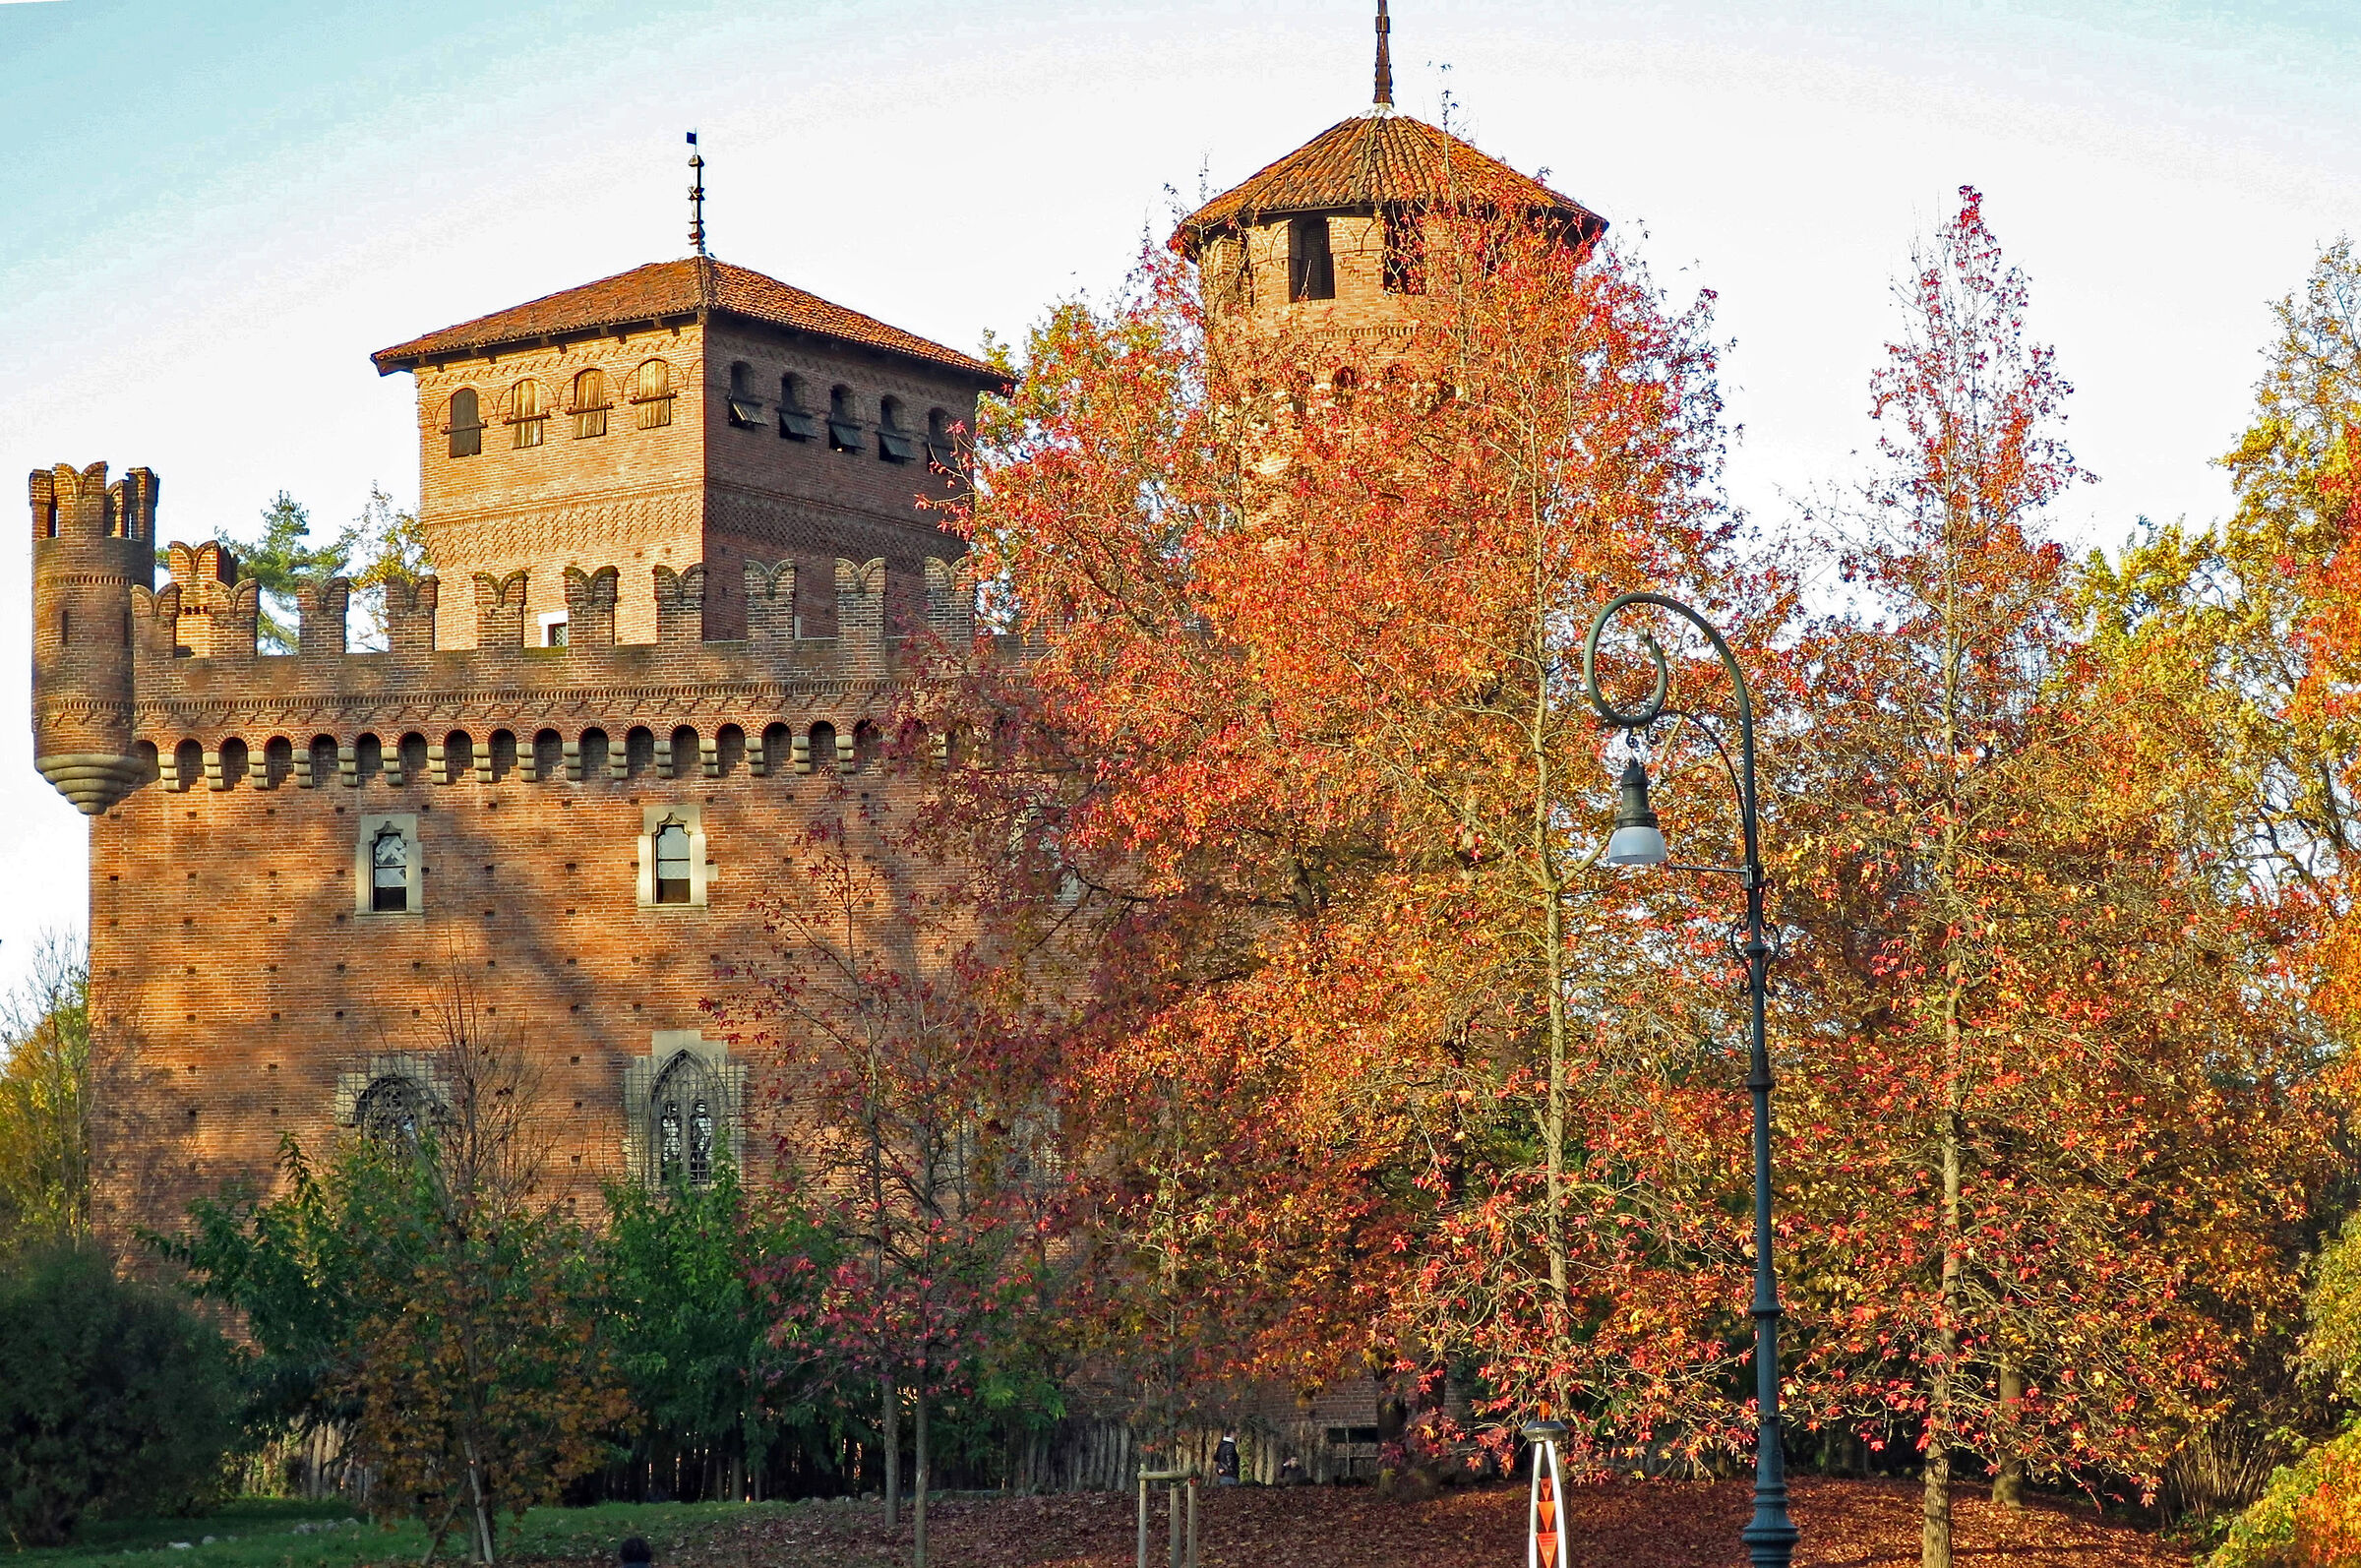 Turin: Medieval village in autumn...